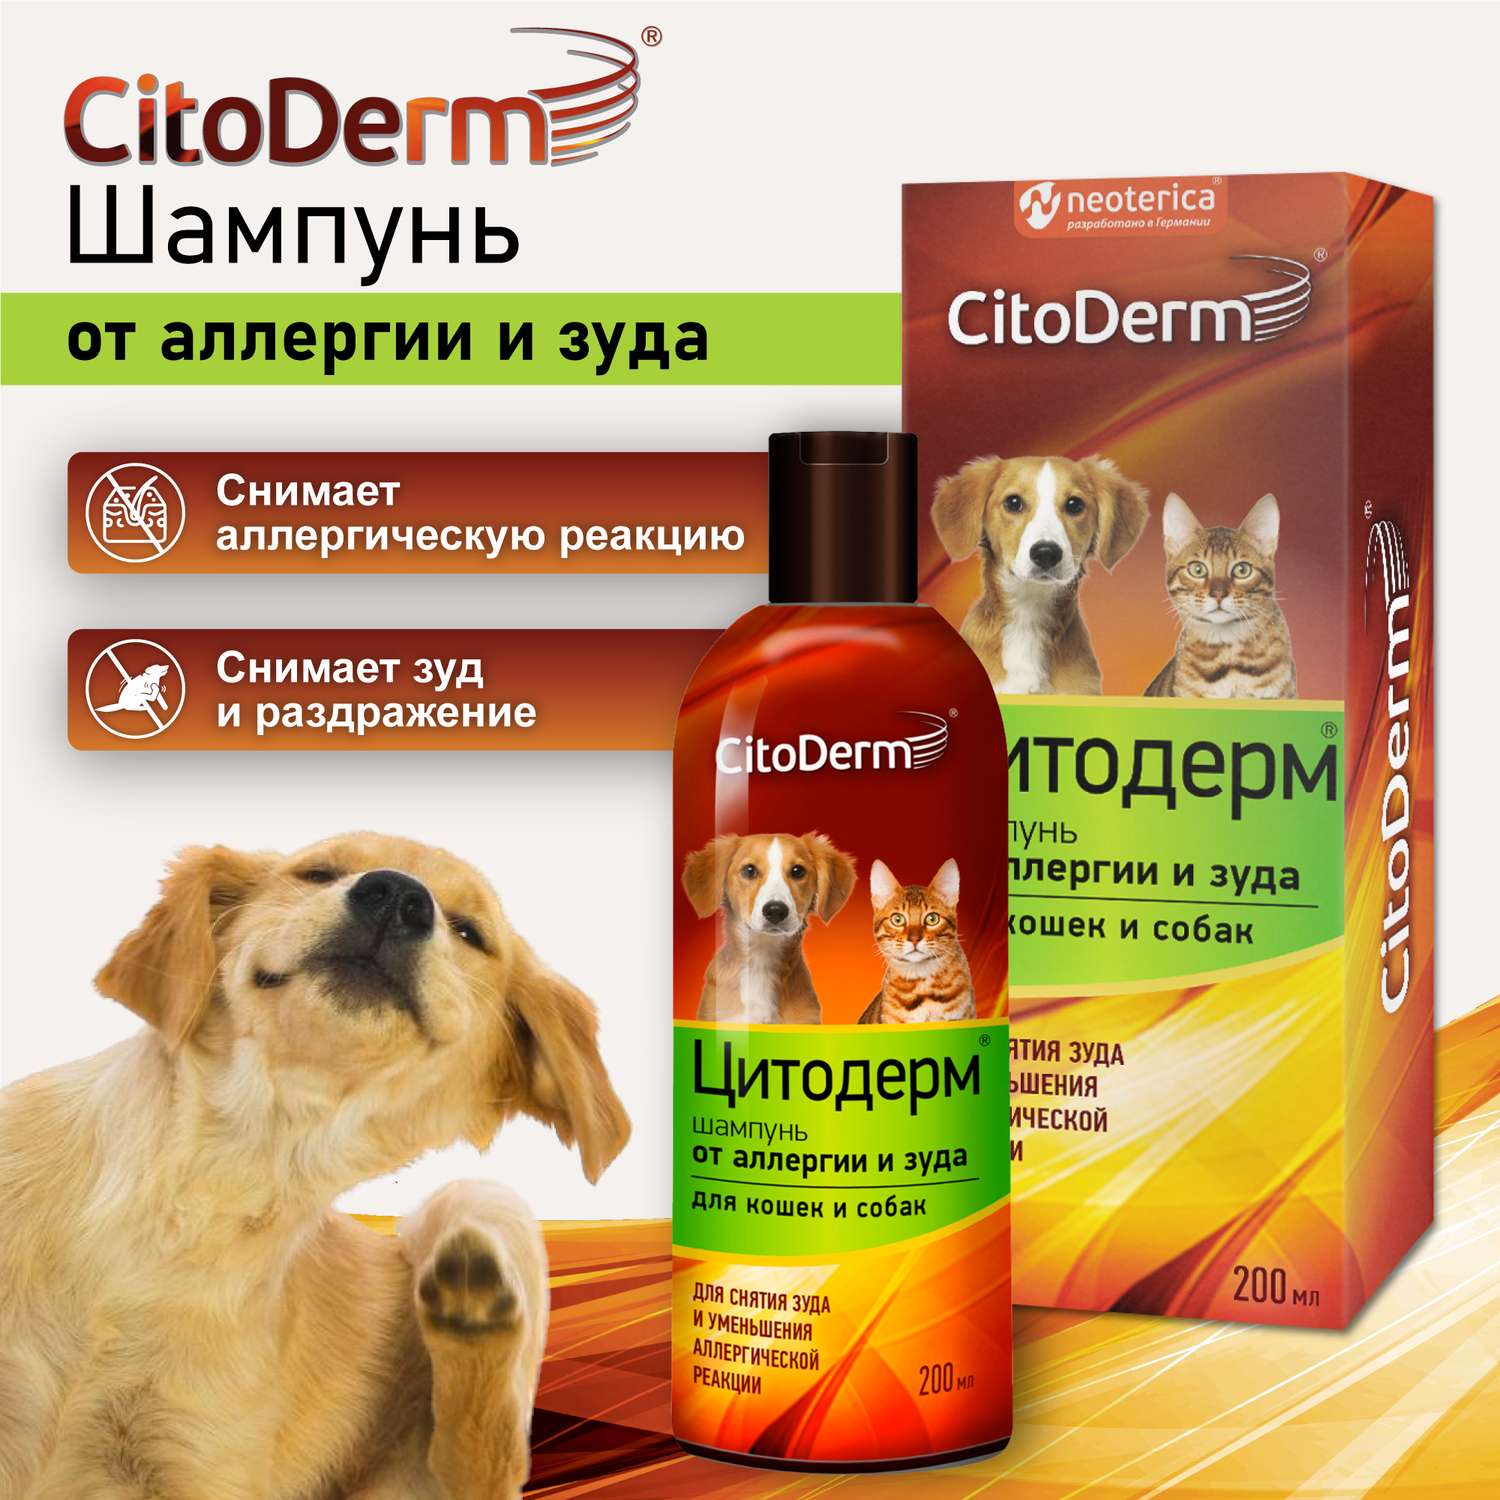 Шампунь для кошек и собак CitoDerm от аллергии и зуда 200мл - фото 2